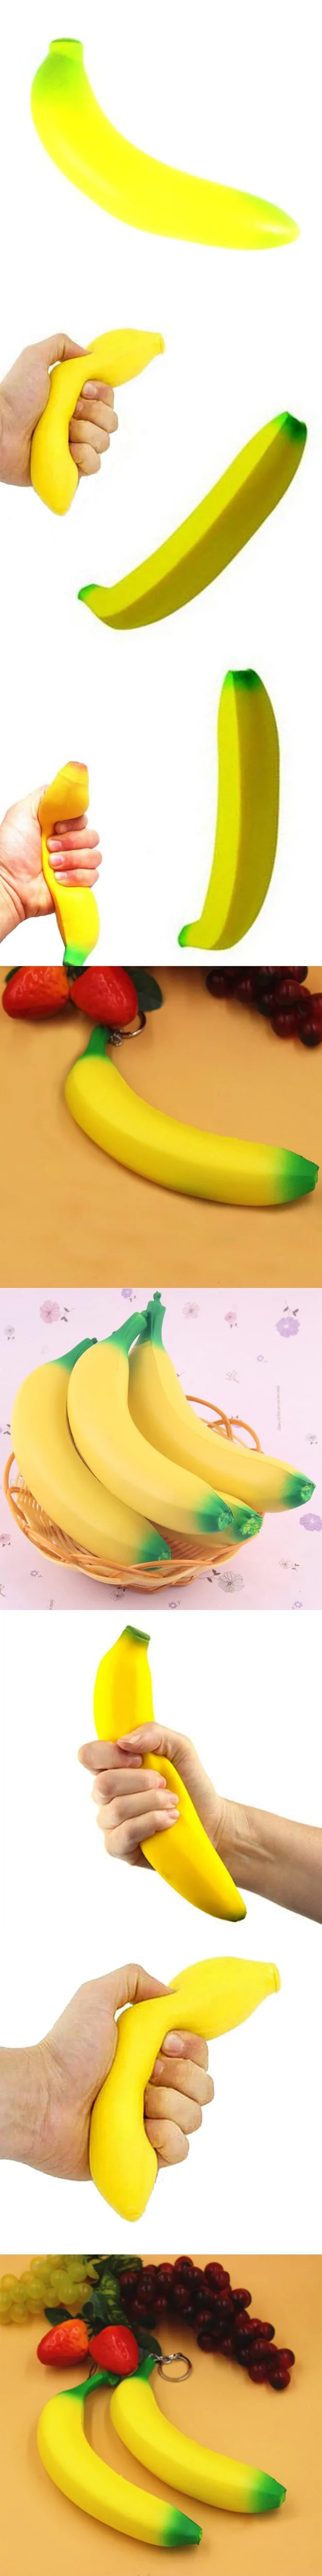 «Сожми банан» беспокойная игрушка очень медленно принимает начальную форму рост моделирования фрукты мягкий хлеб с ароматом сливок Забавный игрушечный подарок для взрослые с СДВГ малыш